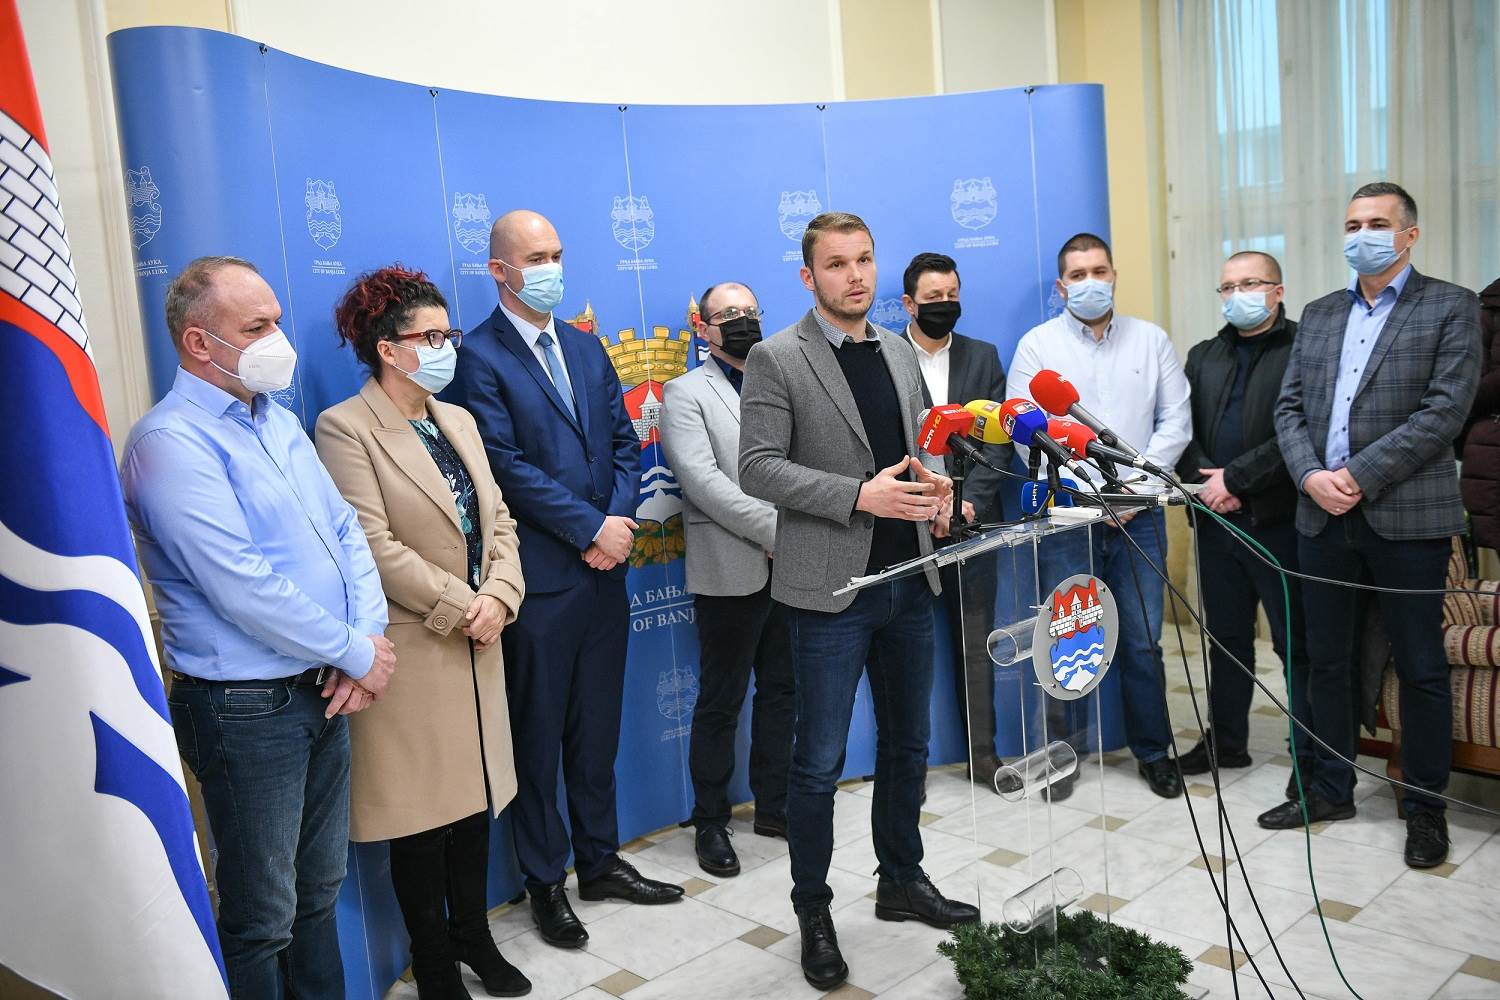  Stanivuković: Dogovor s prevoznicima, dobiće 200.000 KM subvencija za januar i februar 